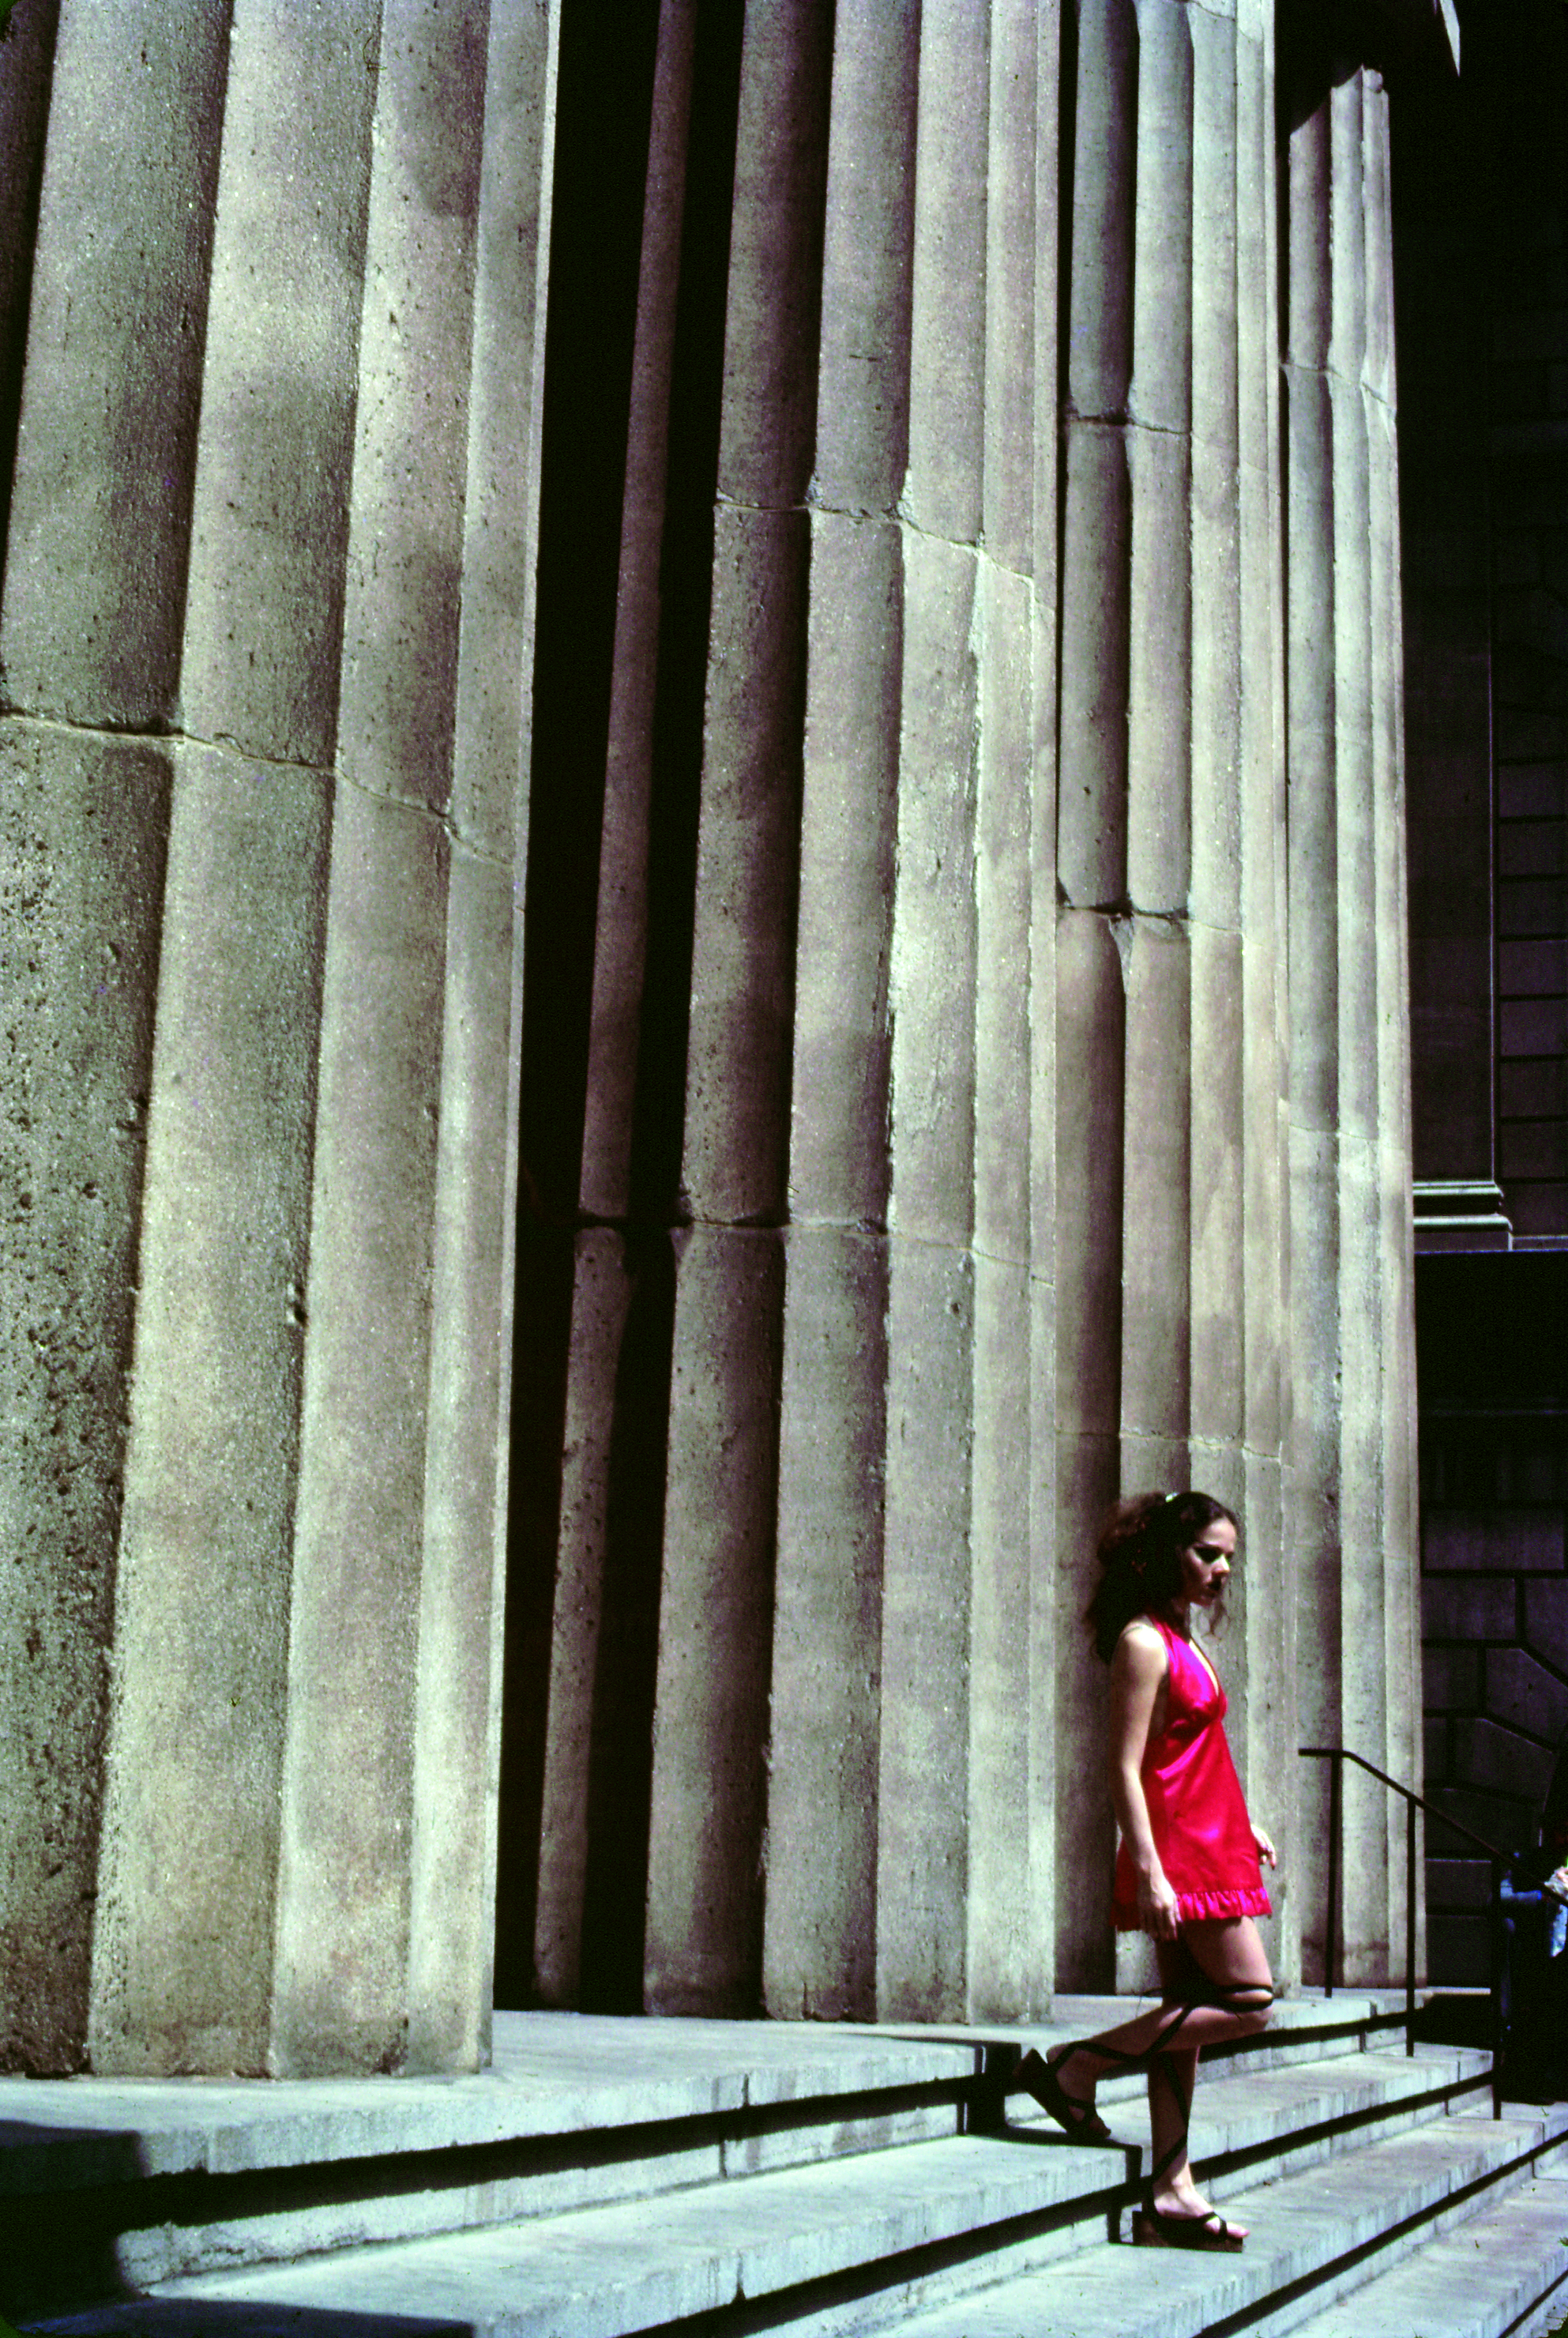  Hélio Oiticica, Agrippina é Roma-Manhattan, 1972. Courtesy of César Oiticica 